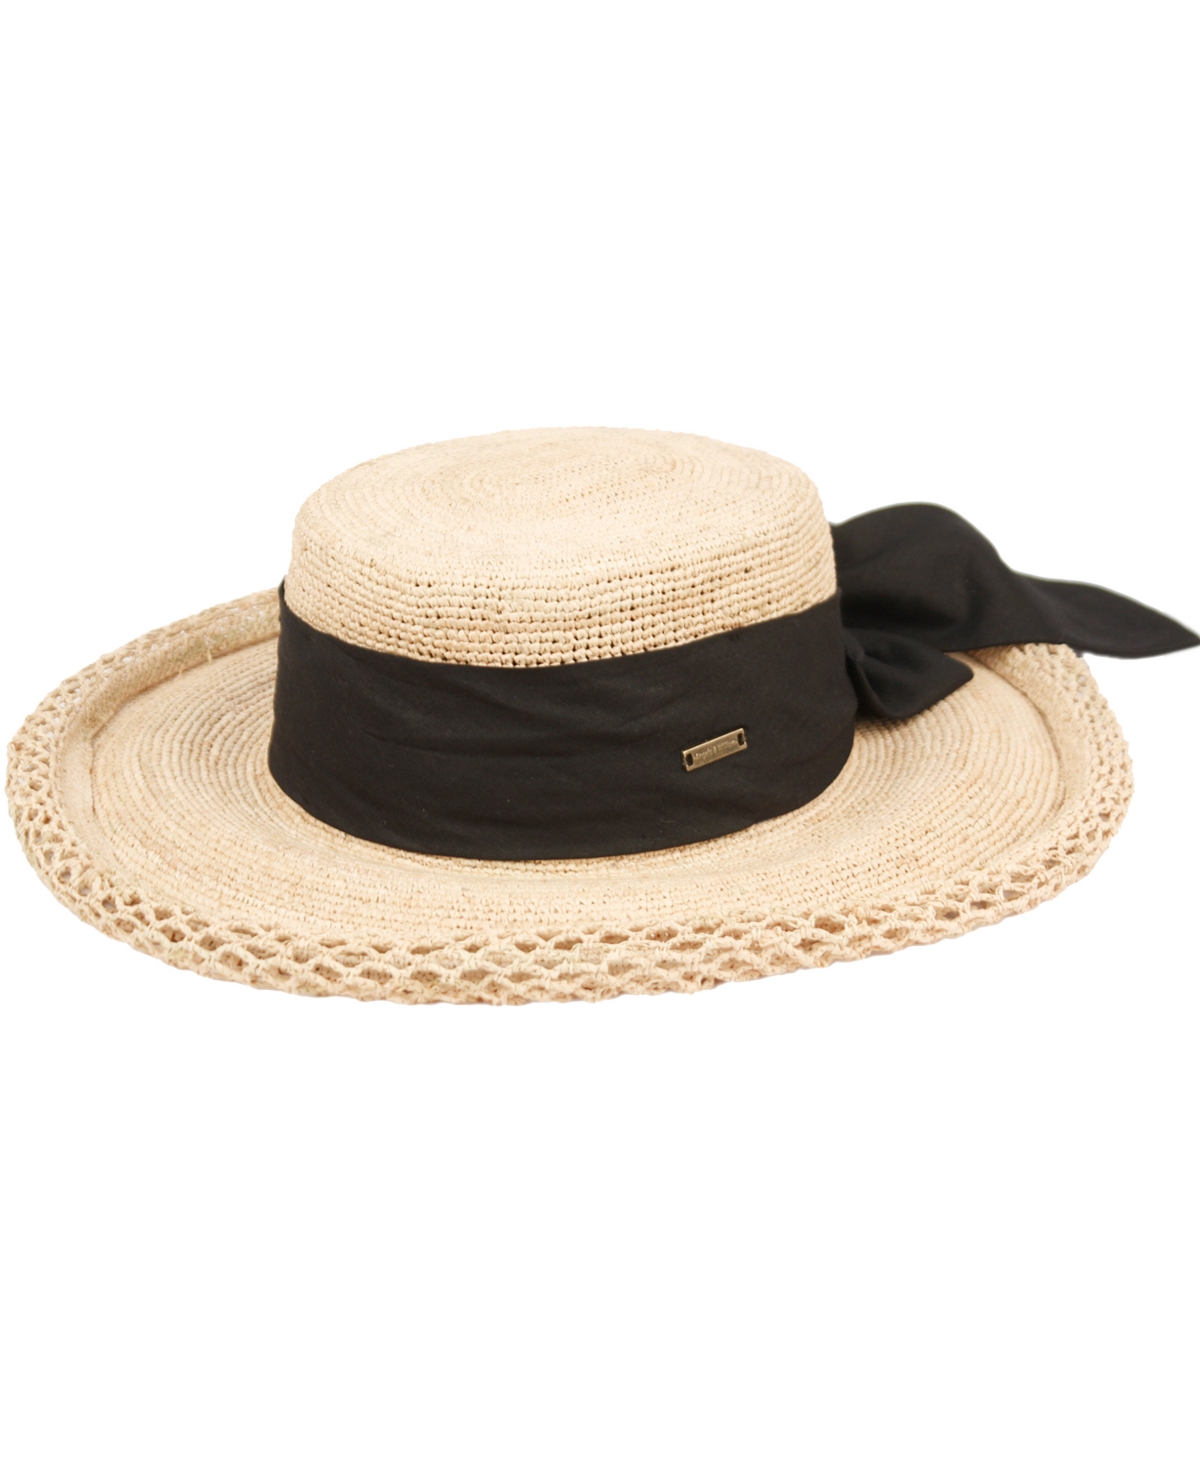 Angela & William Women's Beach Sun Straw Floppy Hat In Neutral